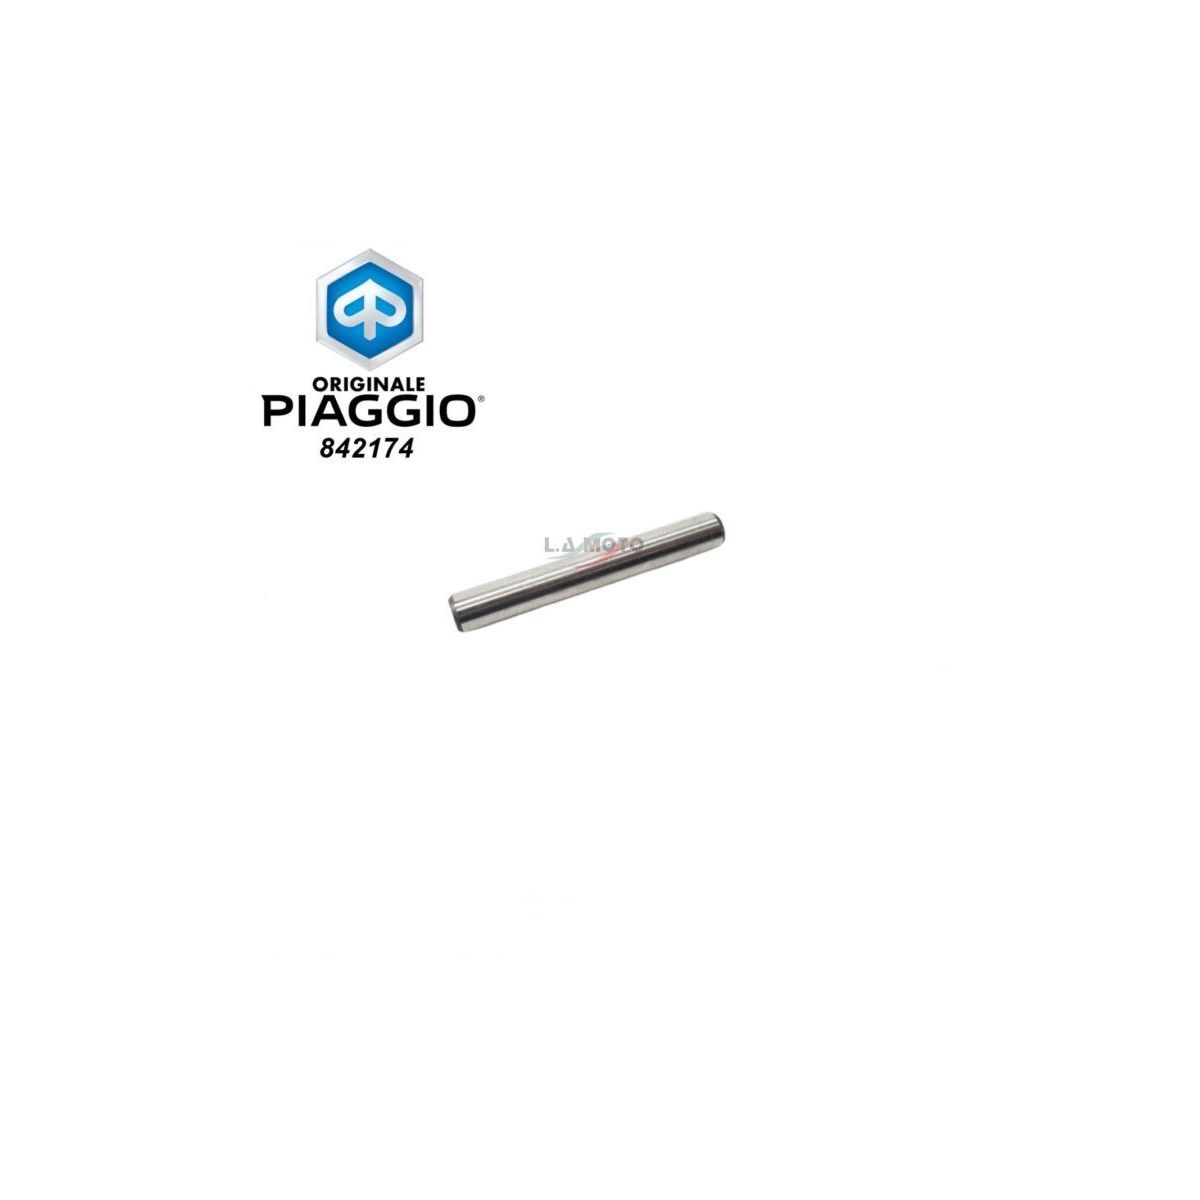 842174- Asse Bilancieri originale Piaggio vespa